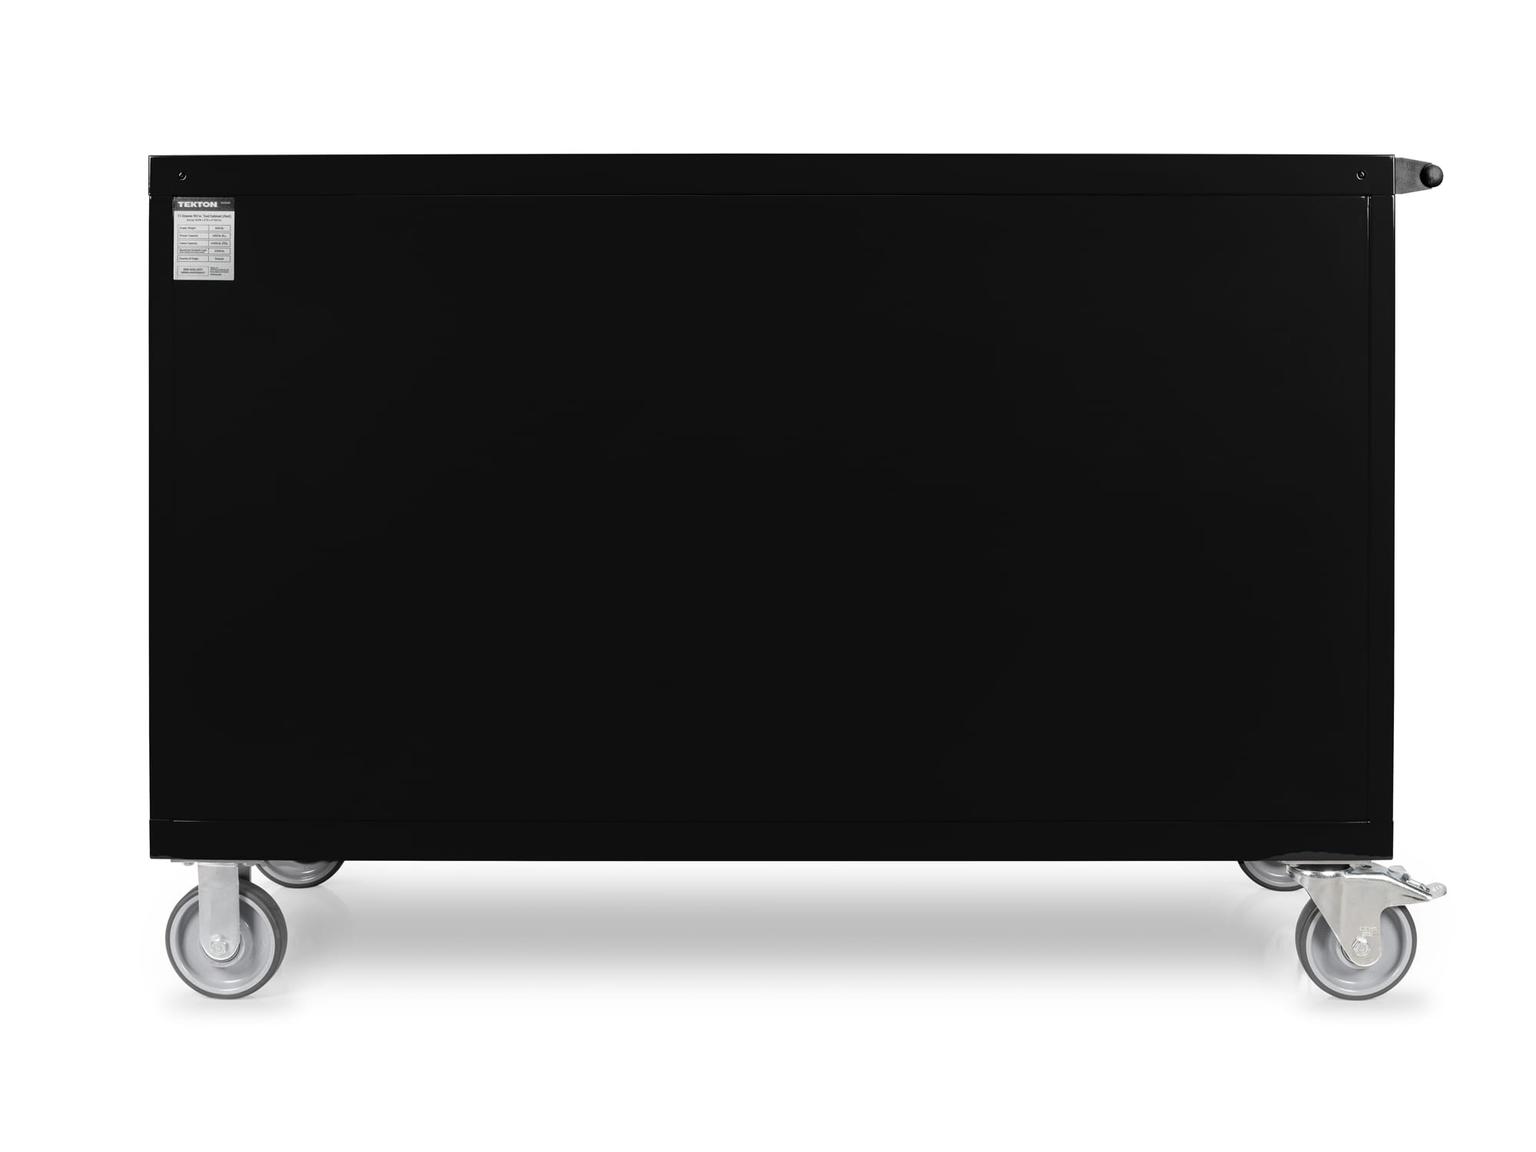 TEKTON OCL63101-T 11-Drawer 50/50 Split Bank Tool Cabinet, Black (60 W x 27 D x 41.5 H in.)